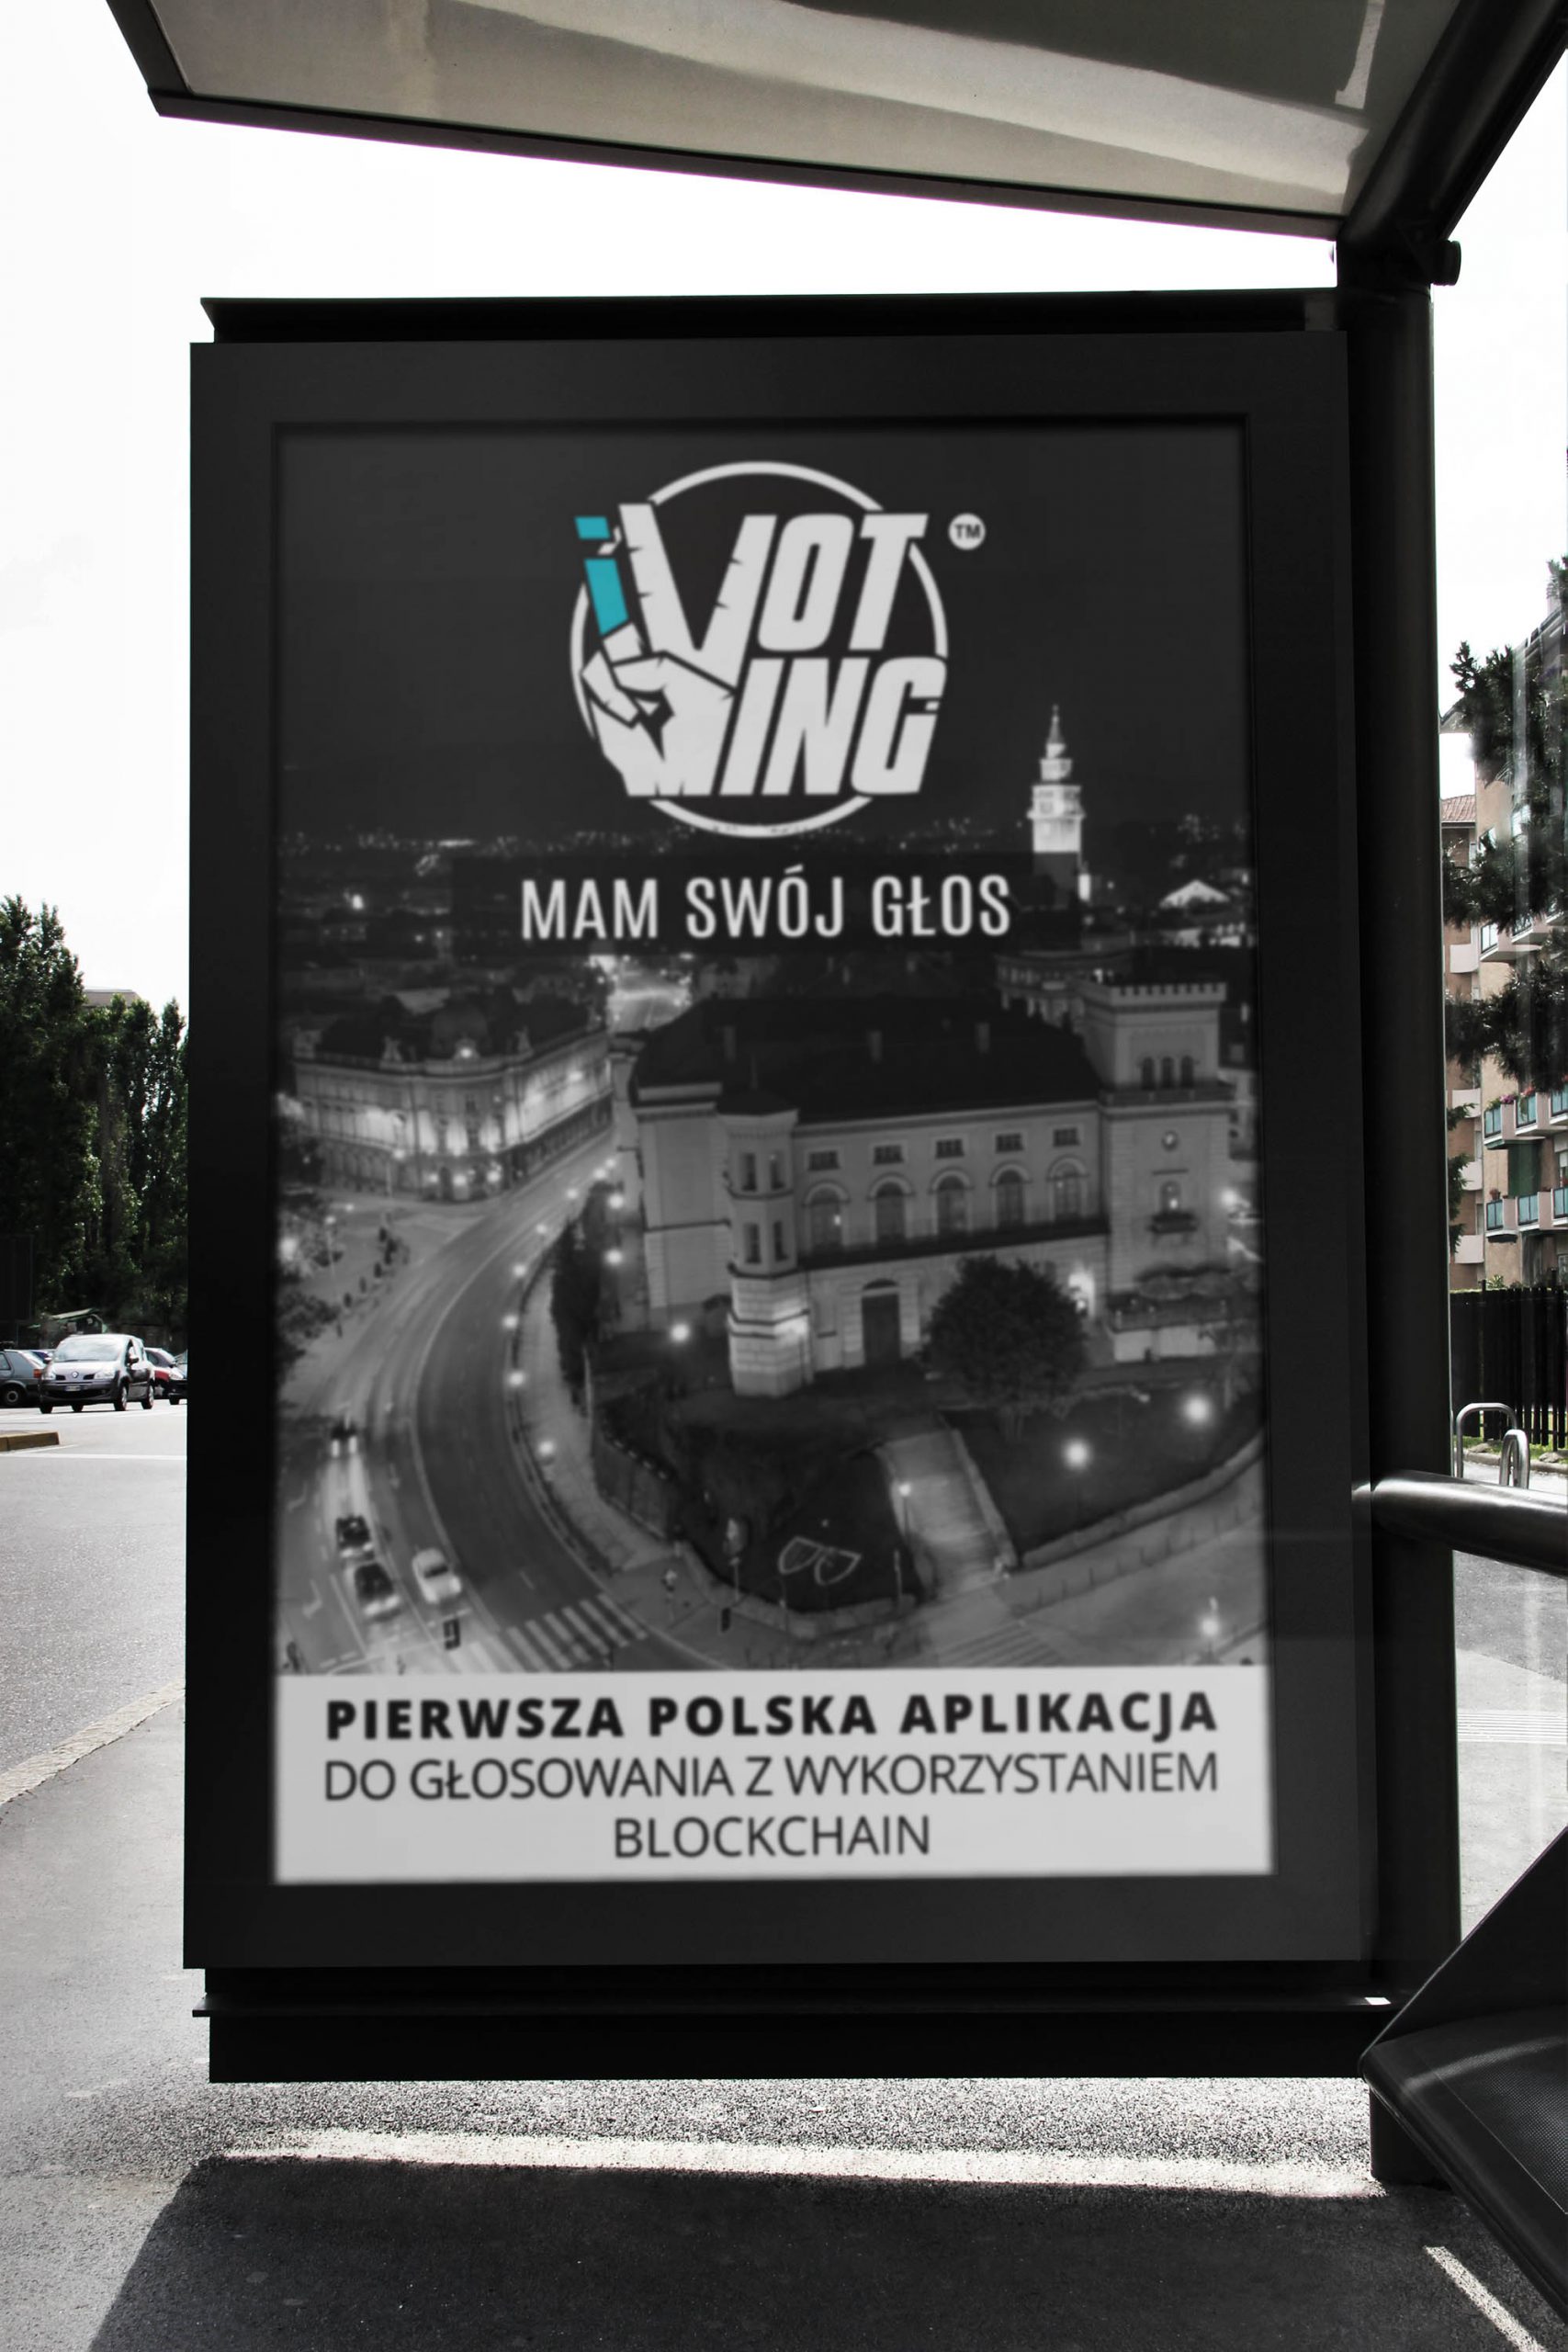 reklama na przystanku z logo projektu iVoting